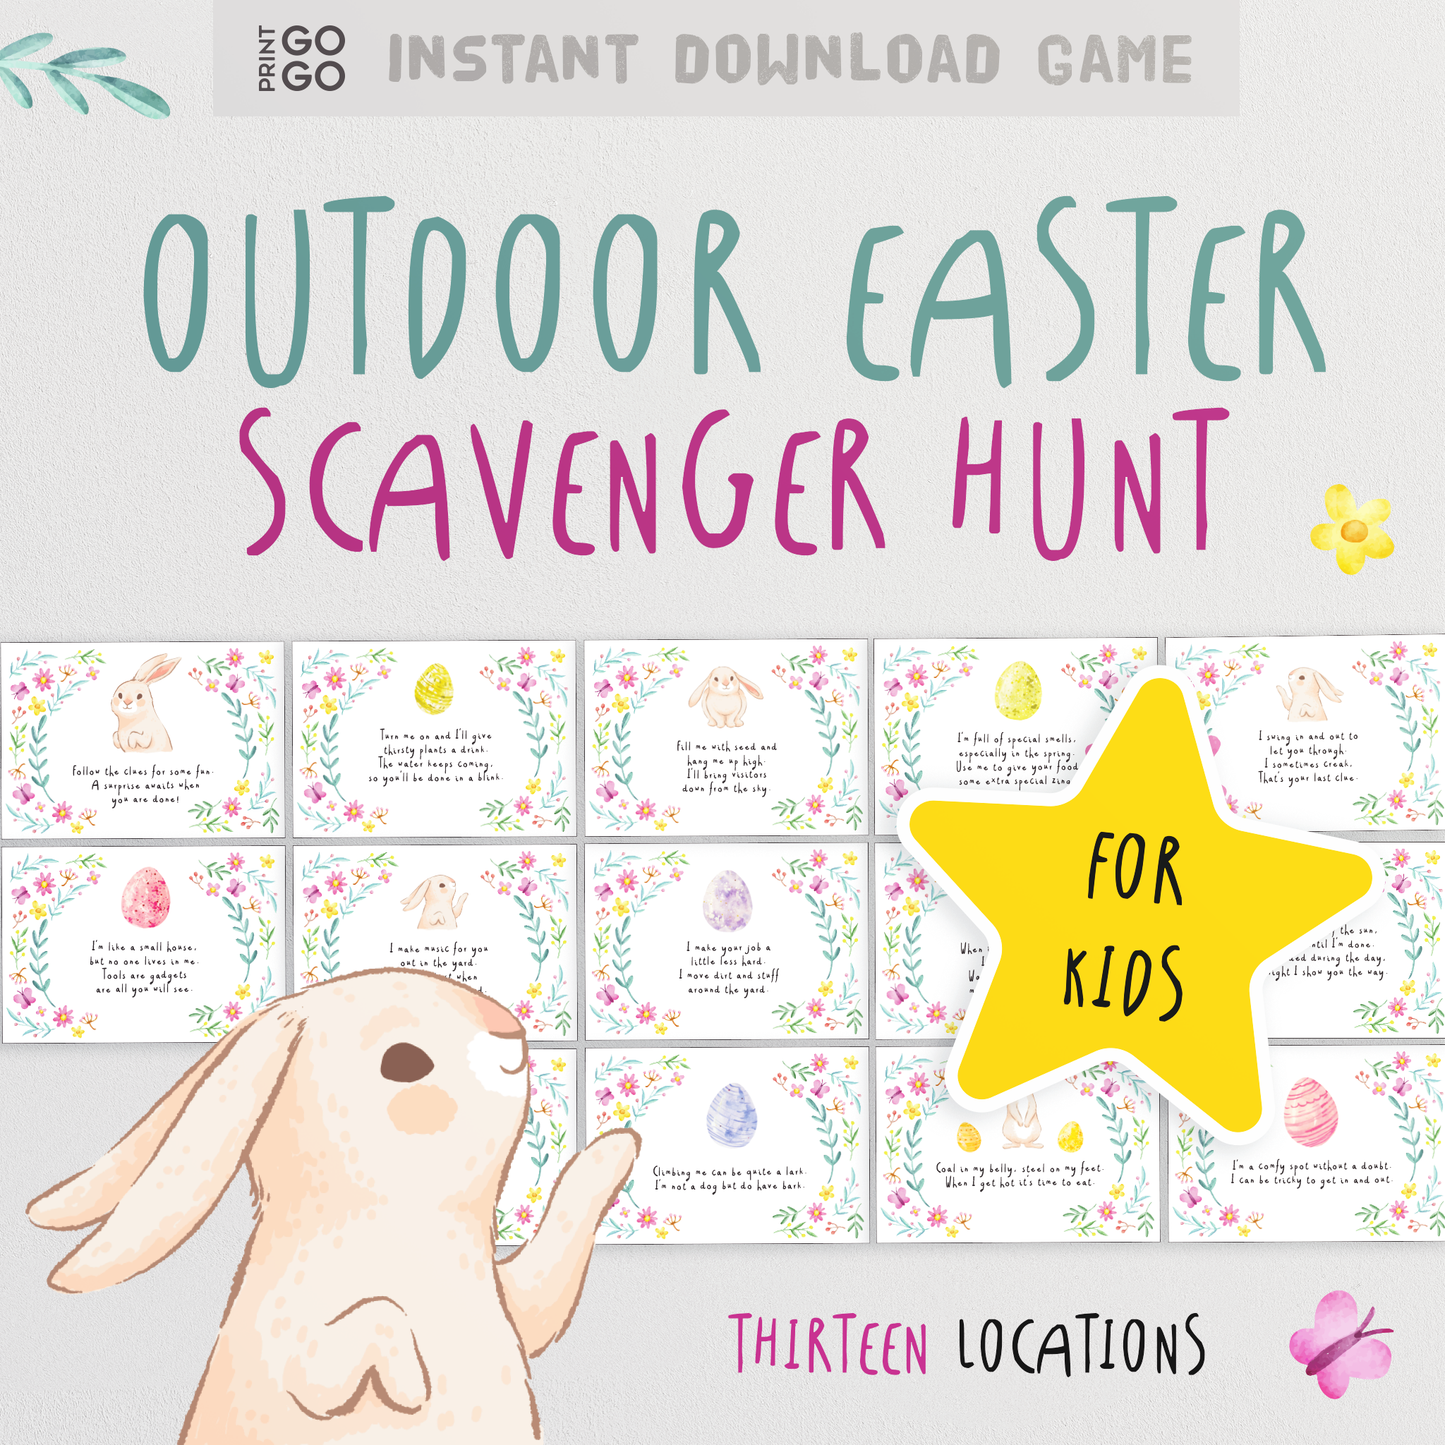 Outdoor Easter Egg Scavenger Hunt - Garden Bunny Trail for Kids!